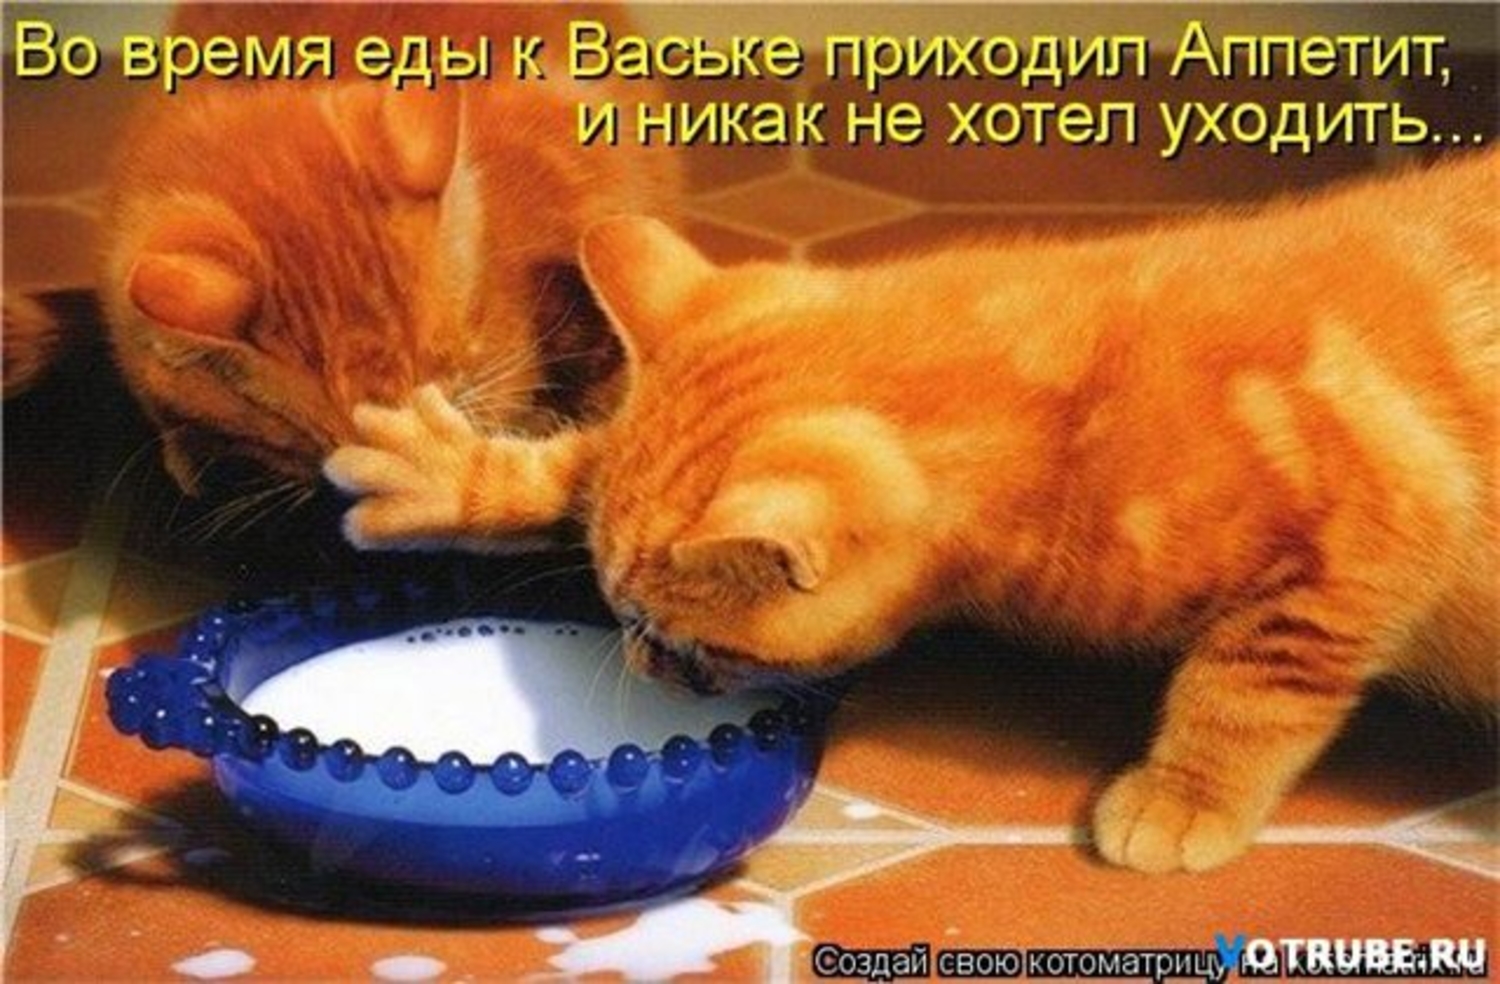 Мурзик любит играть. Кот хочет есть. Жадные коты. Миска для кота. Рыжий кот кушает.